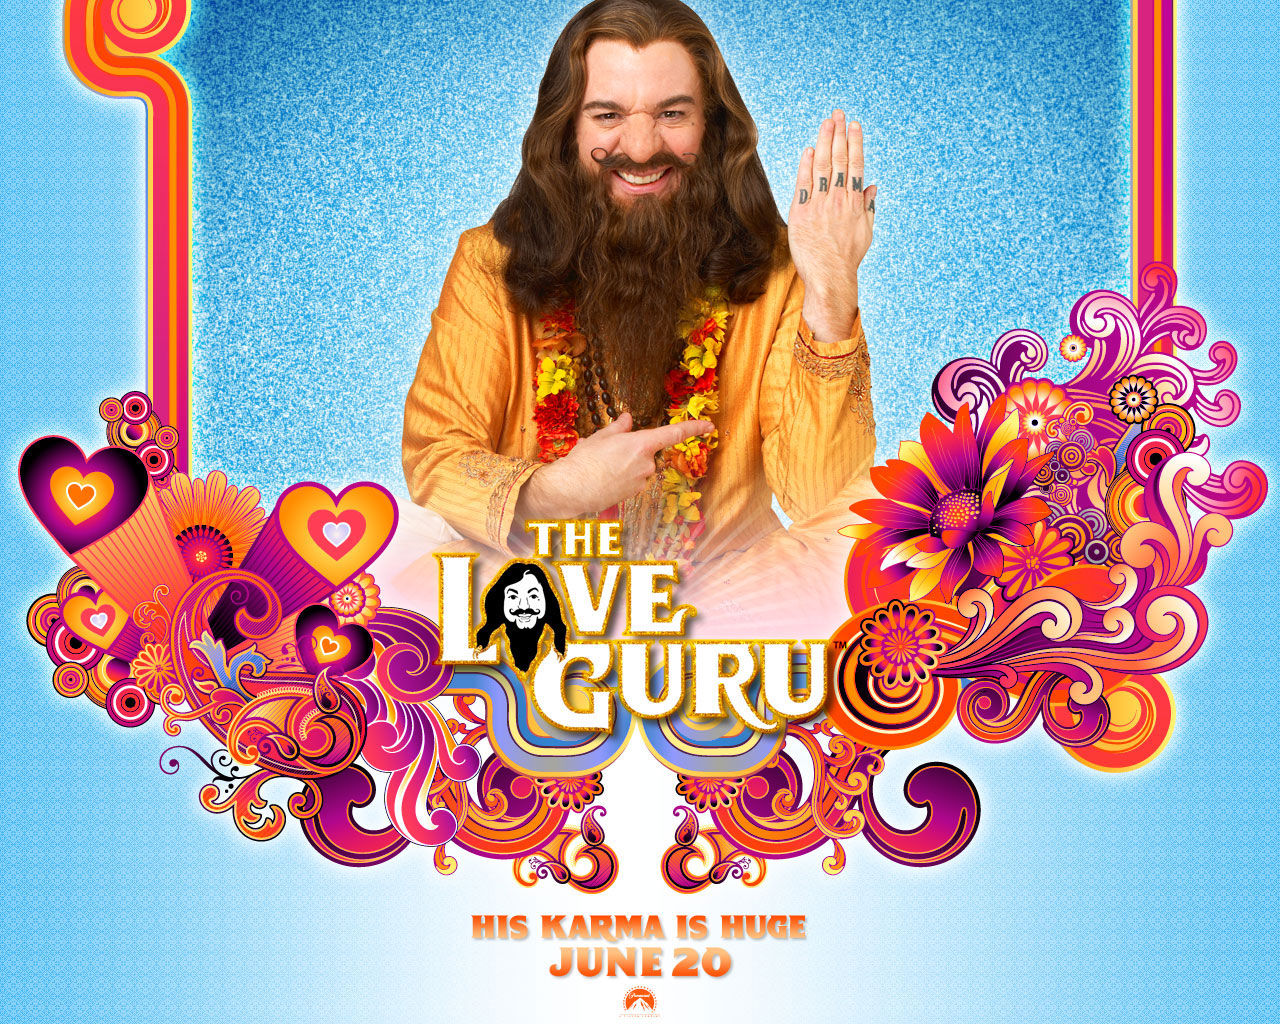 The Love Guru - The-Love-Guru-mike-myers-846433_1280_1024